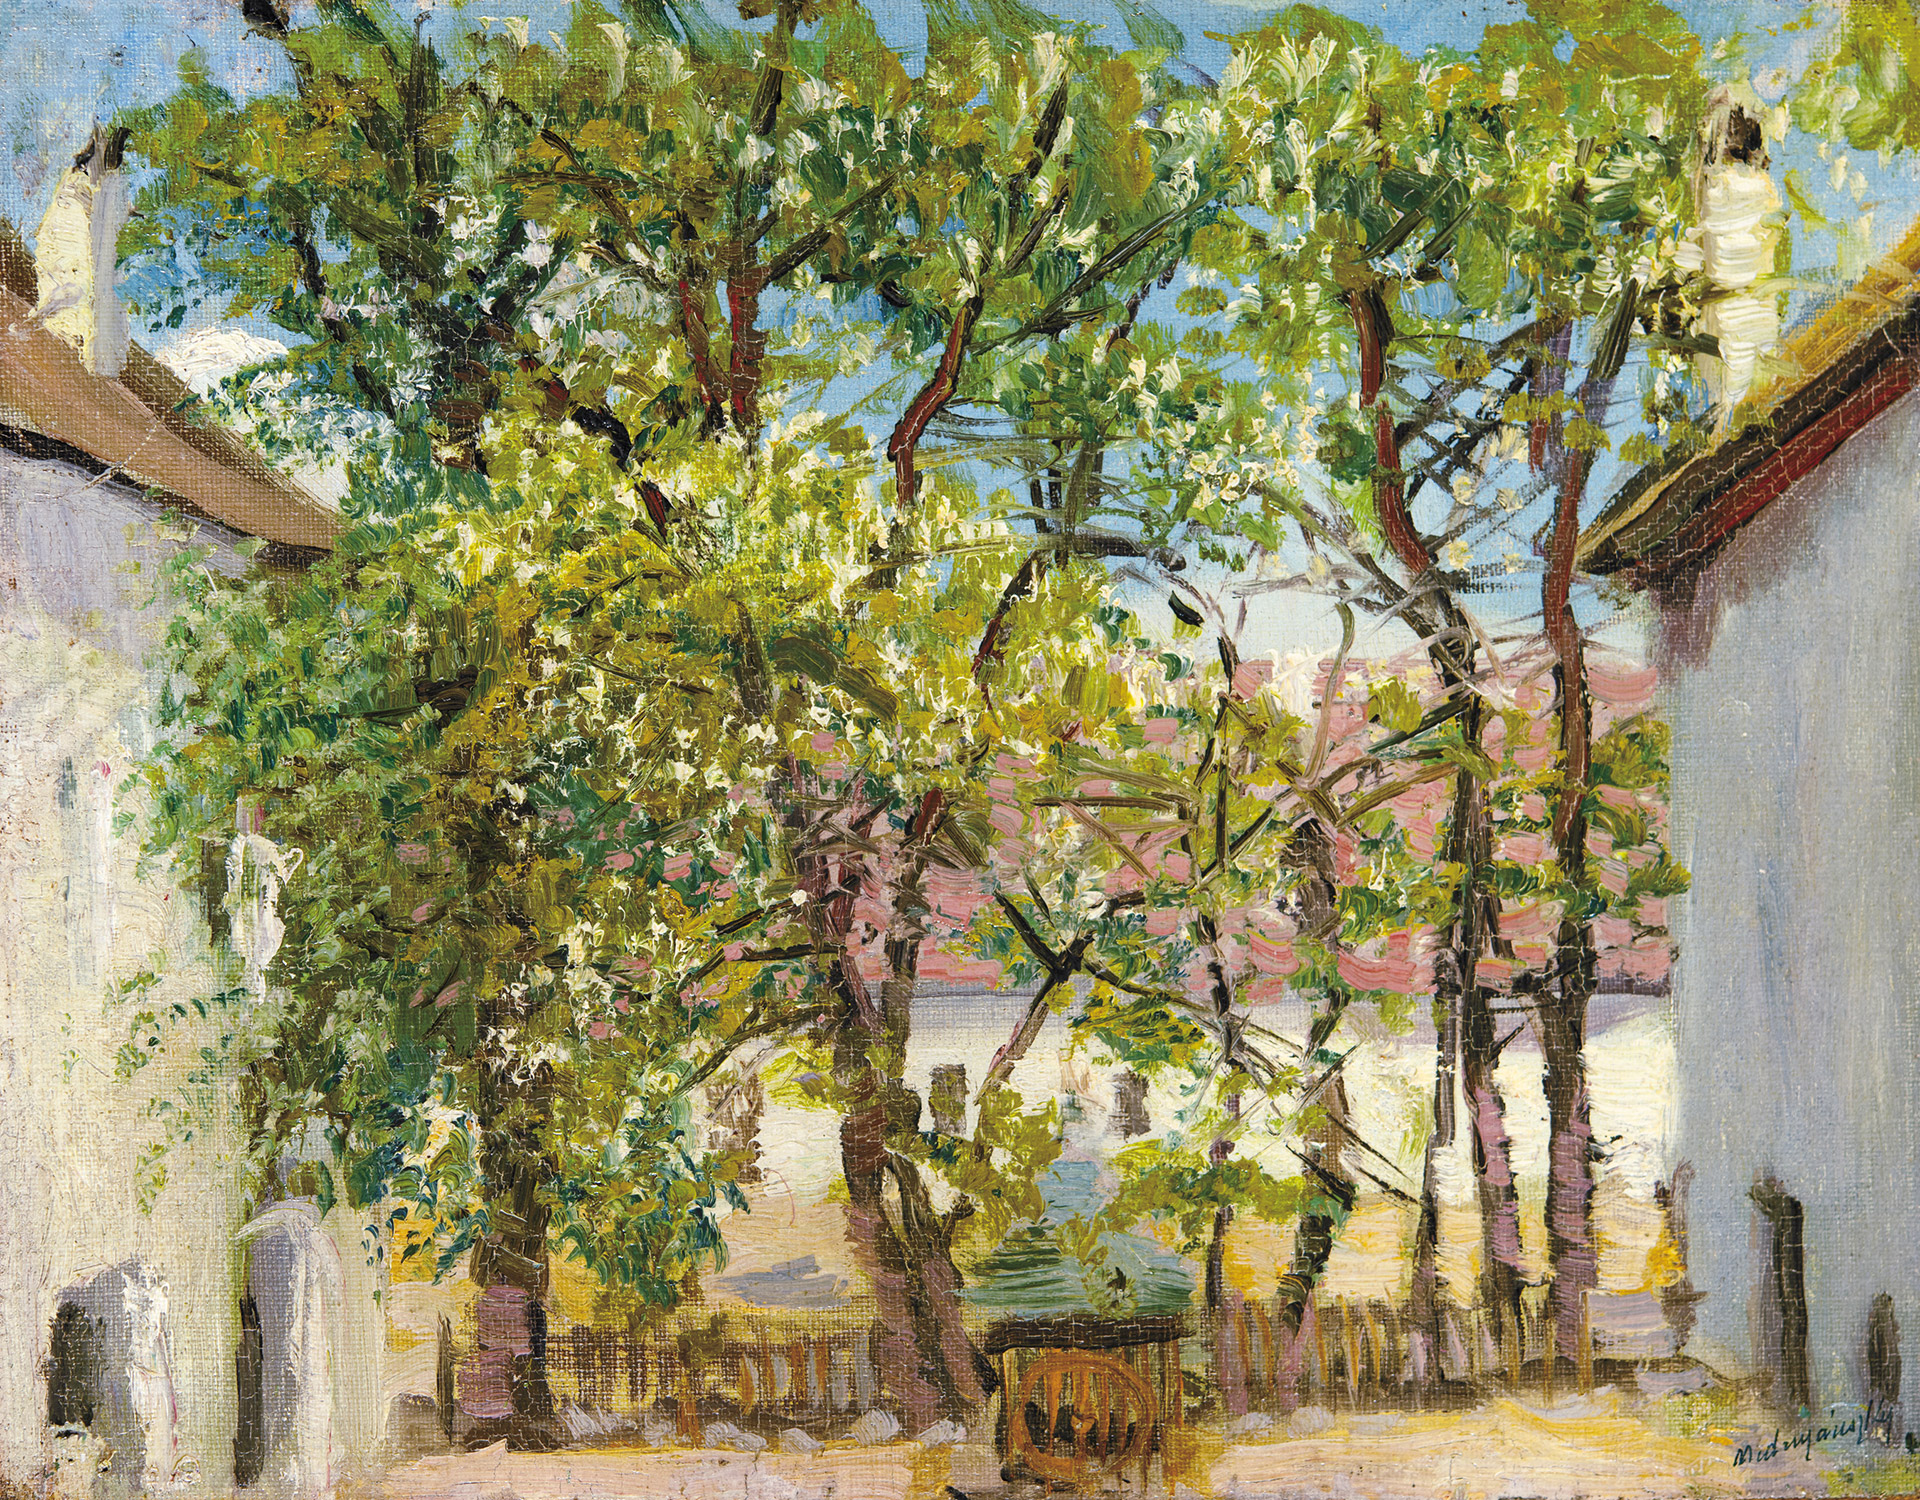 Mednyánszky László (1852-1919) Yard in Shadows